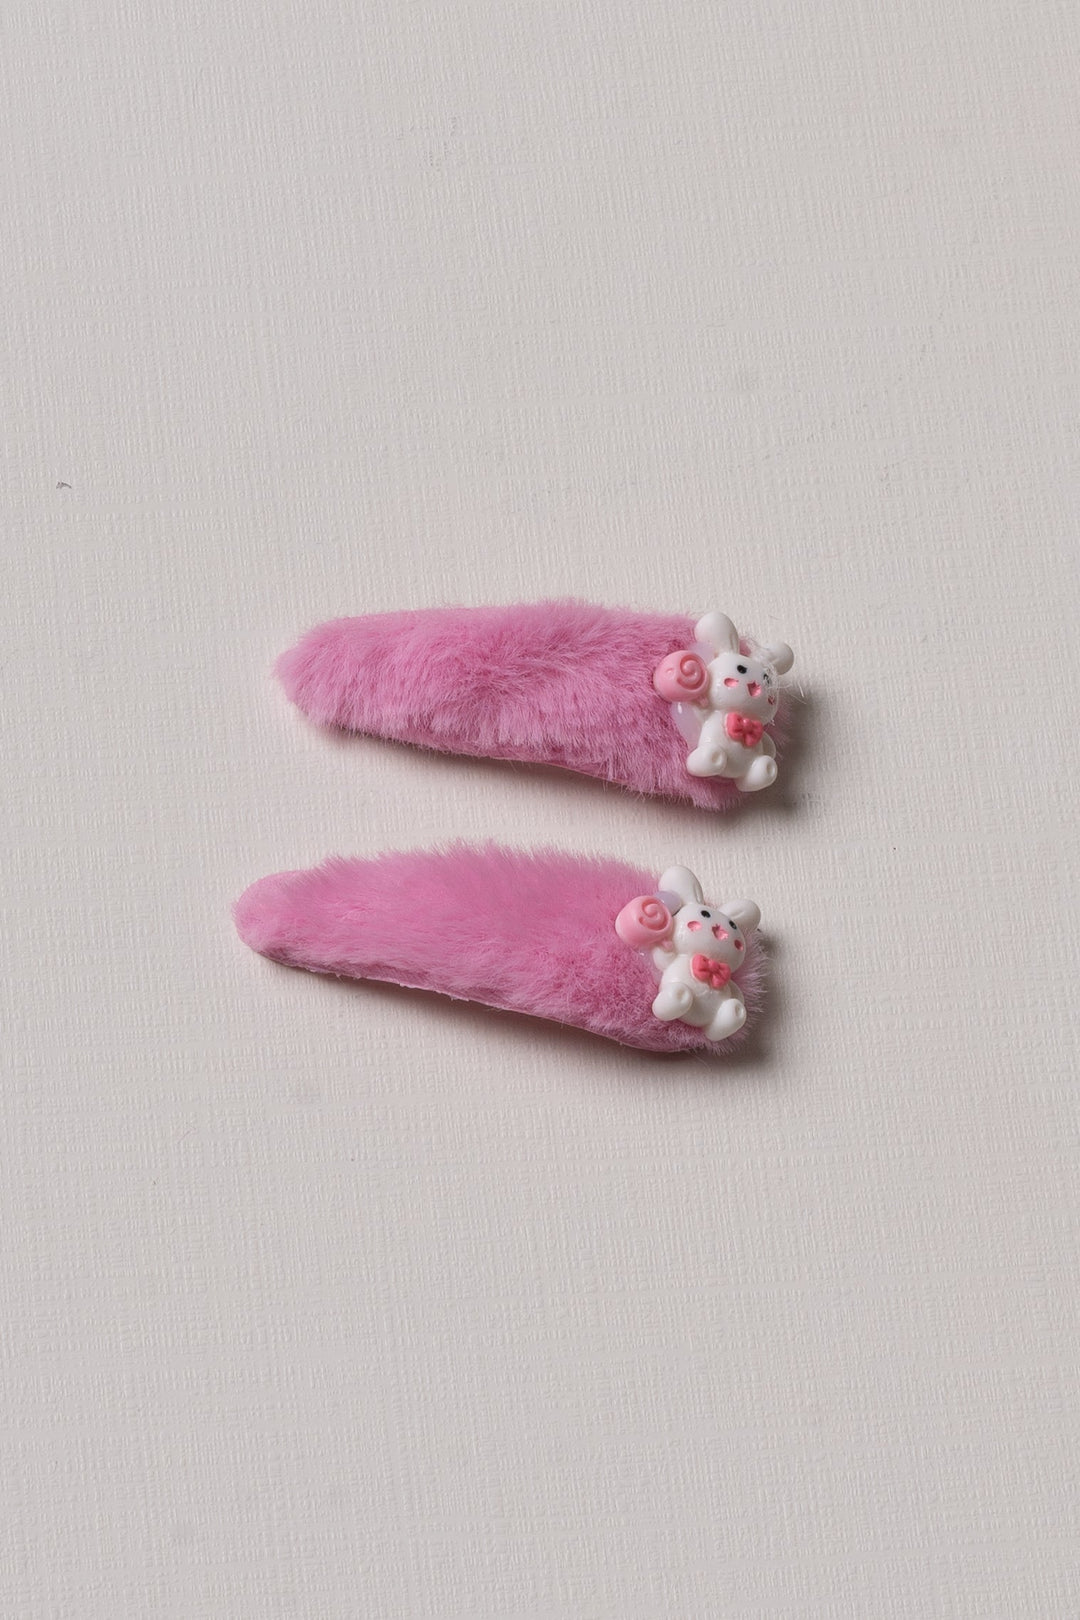 The Nesavu Tick Tac Clip Vibrant Pink Character Fuzzy Tick Tac Clips Nesavu Pink / Style 4 JHTT15D Kids' Pink Fuzzy Character Hair Clips | Cute Tick Tac Clips Collection | The Nesavu